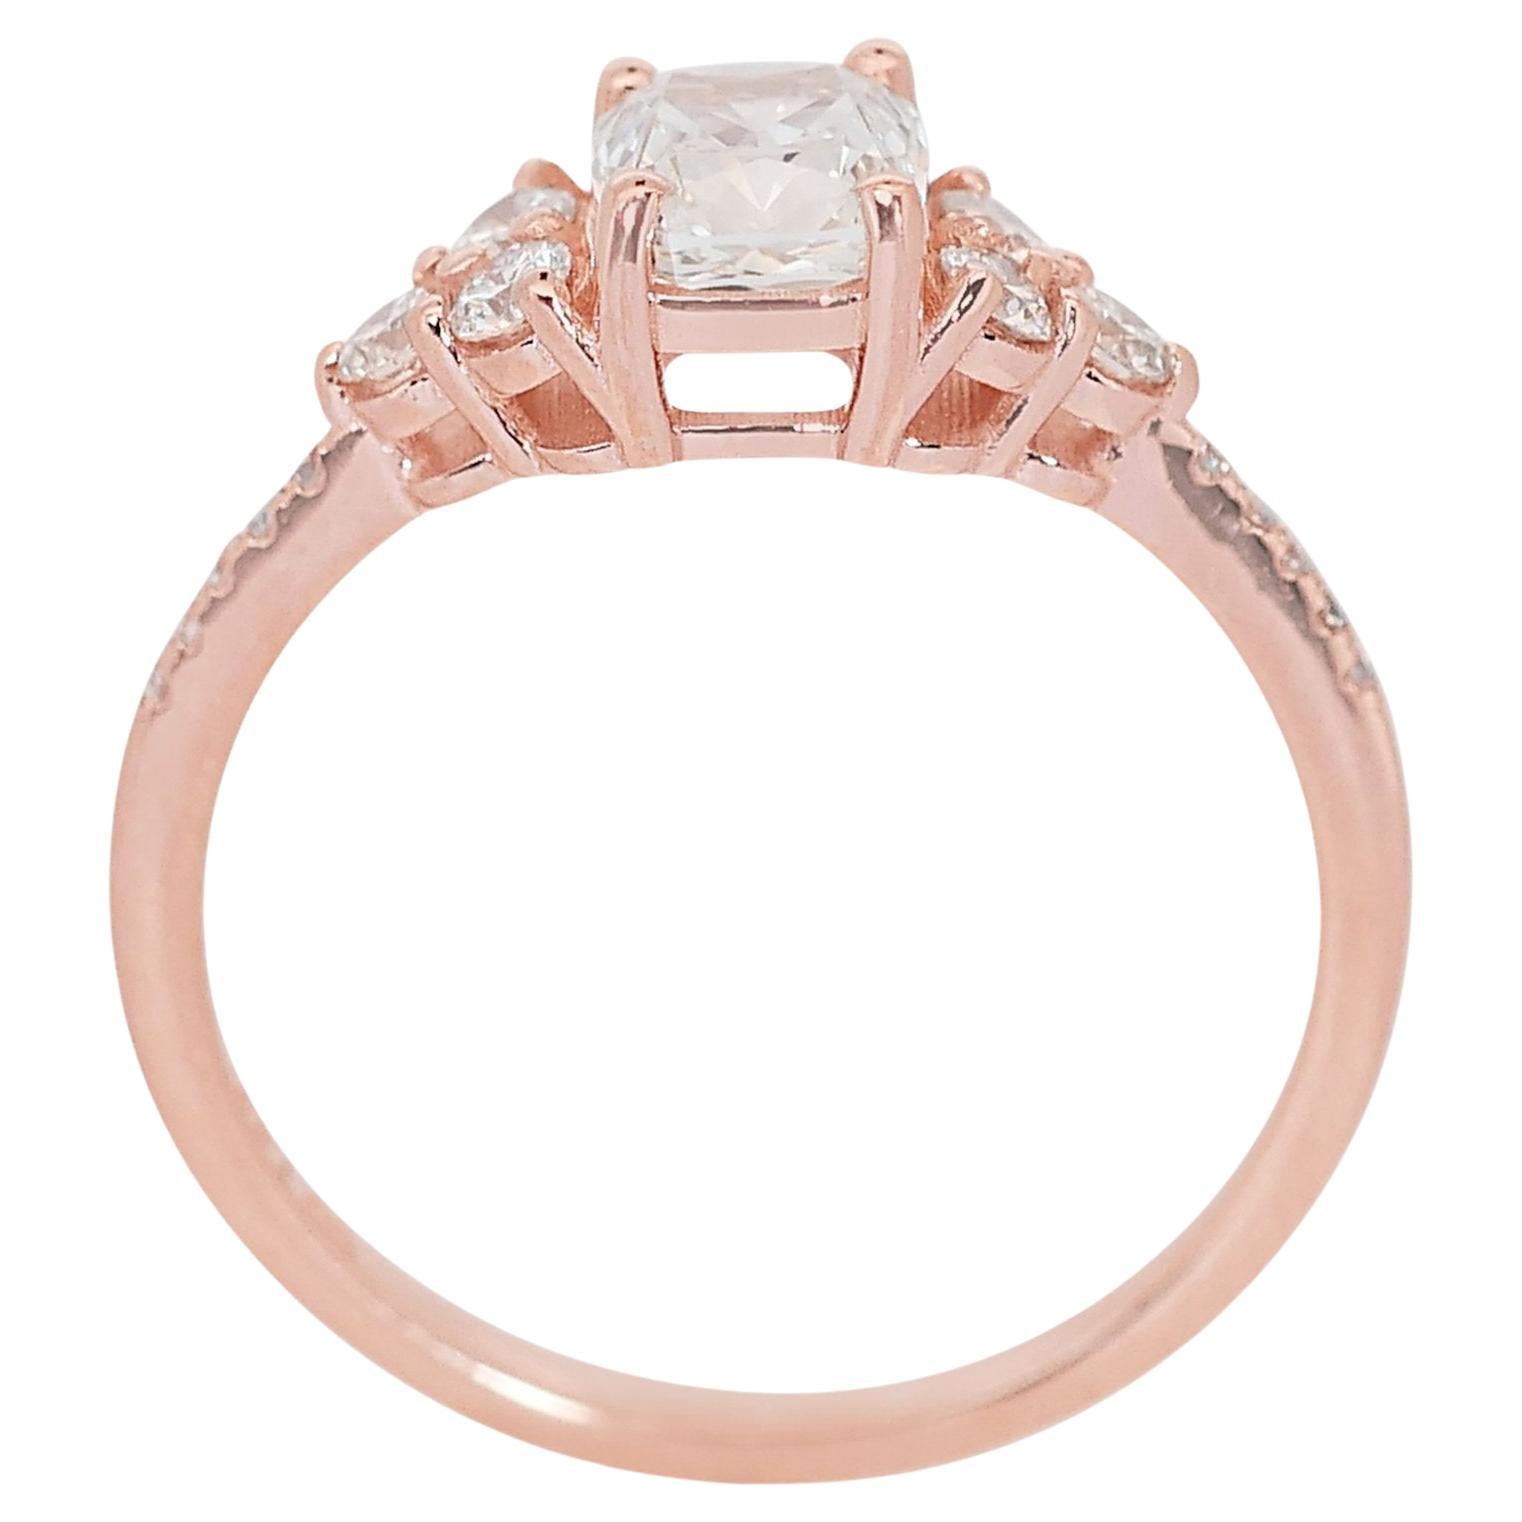 Enchanting 1.29ct Diamond Pave Ring in 18k Rose Gold - GIA Certified 2